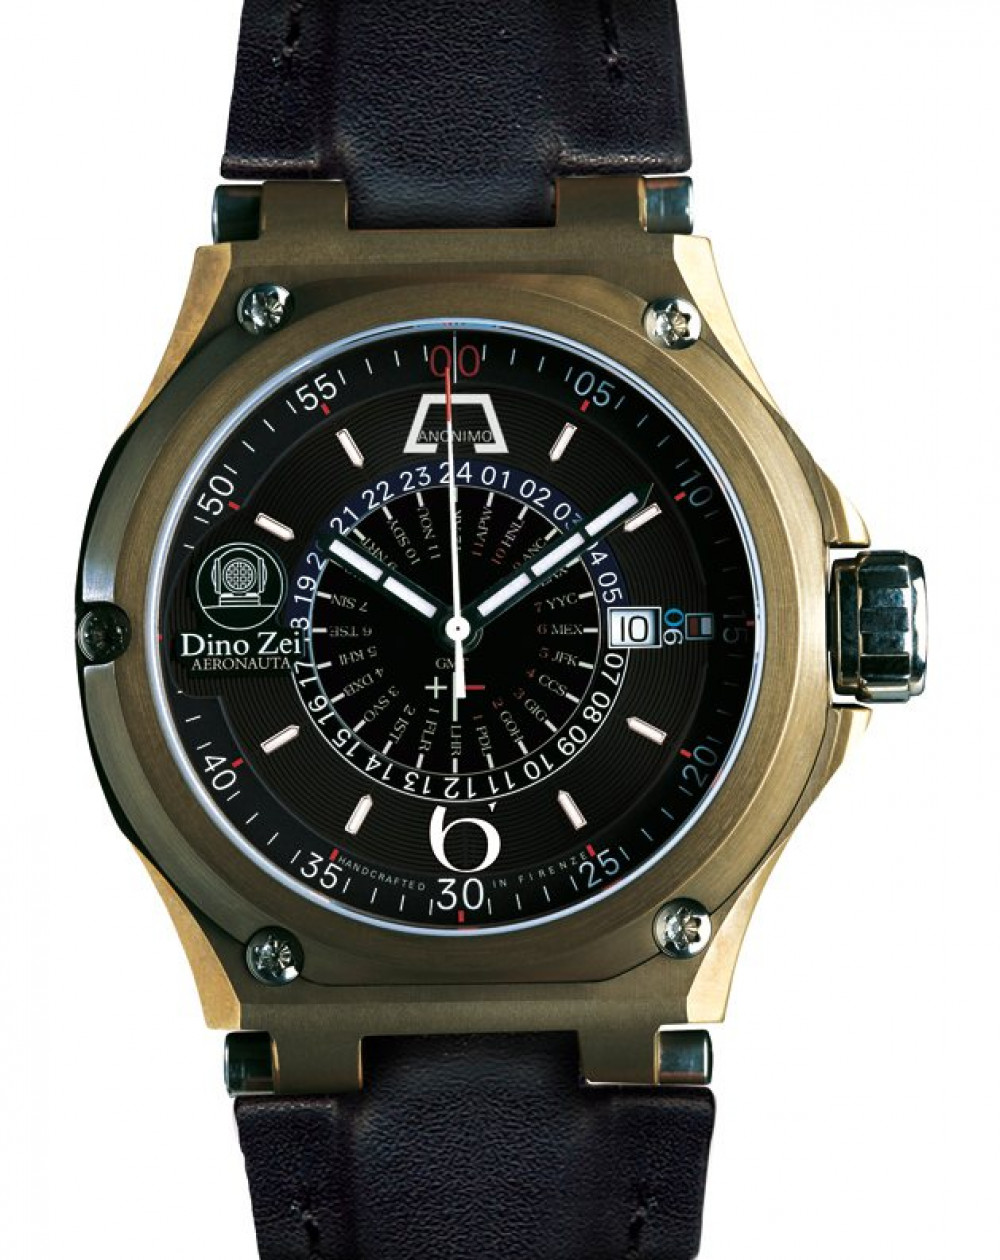 Zegarek firmy Anonimo, model Aeronauta